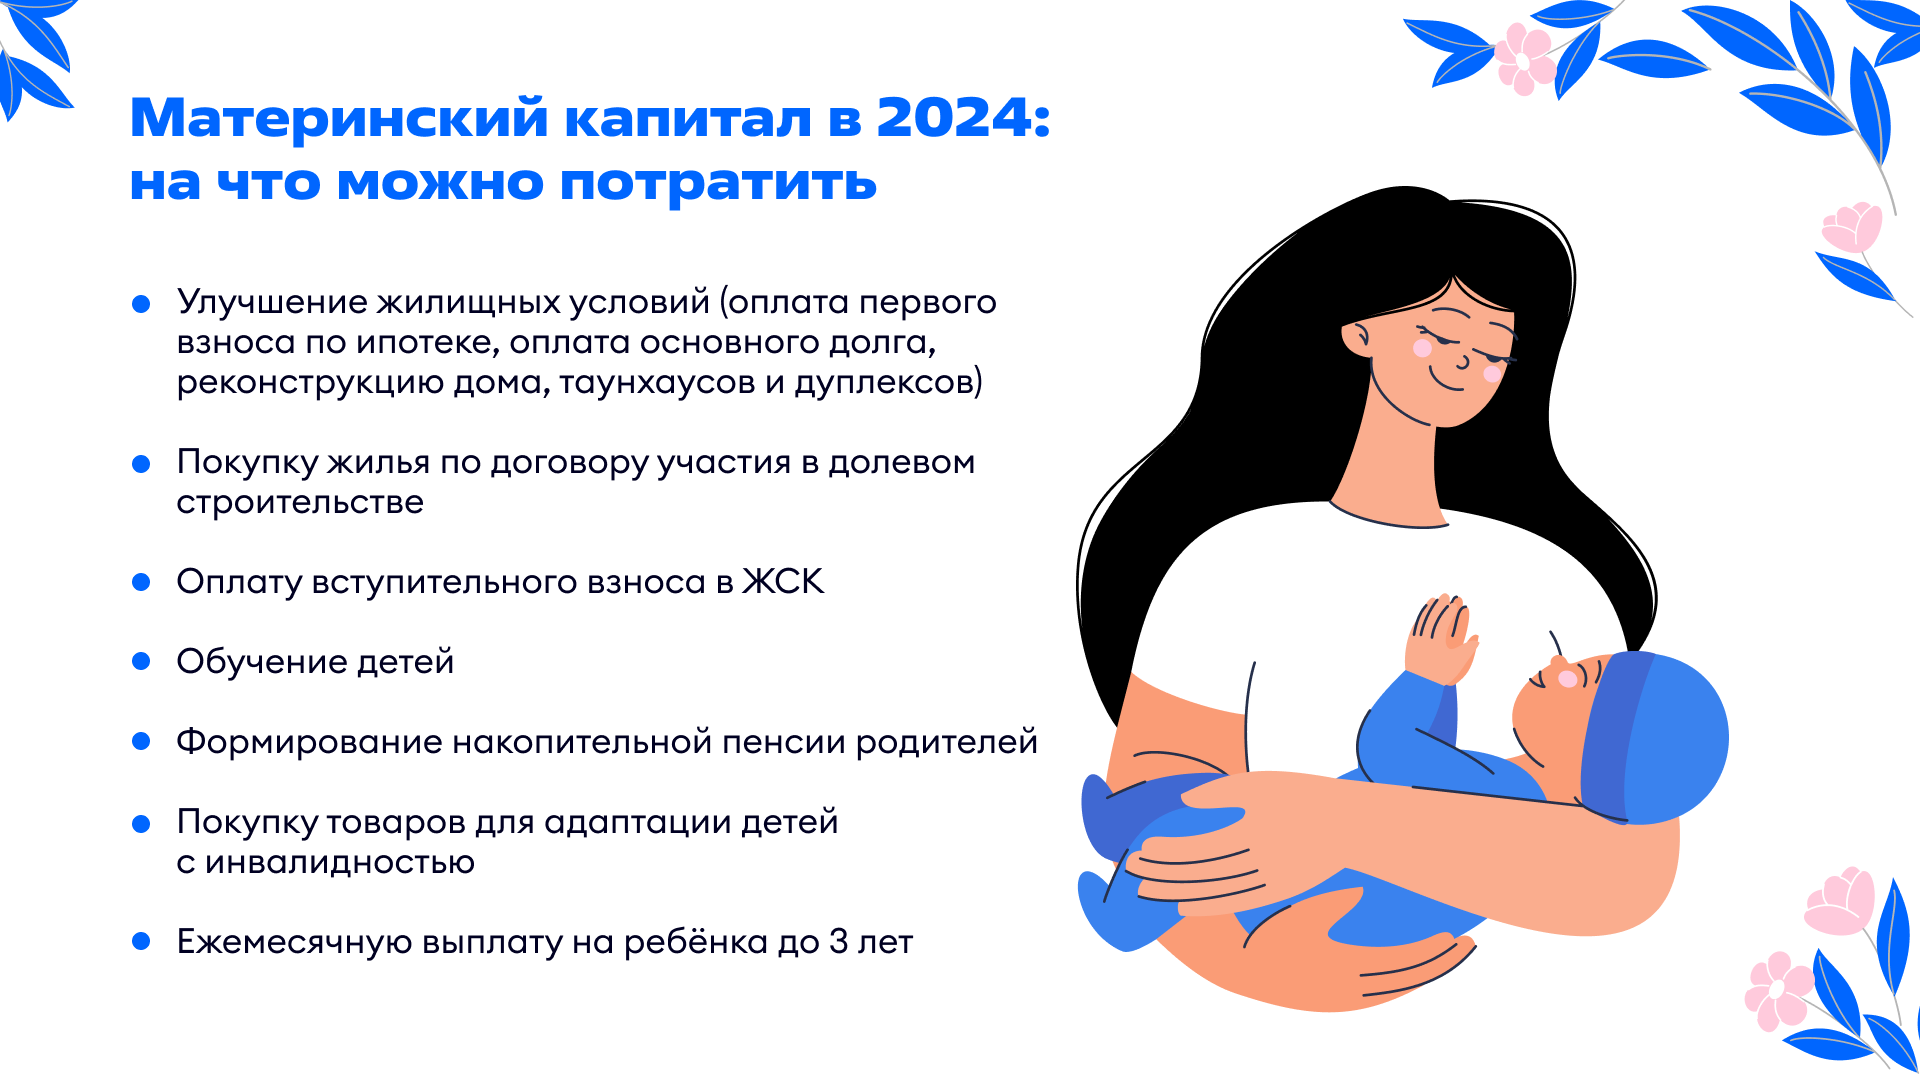 Материнский капитал в 2024 году: на что можно потратить